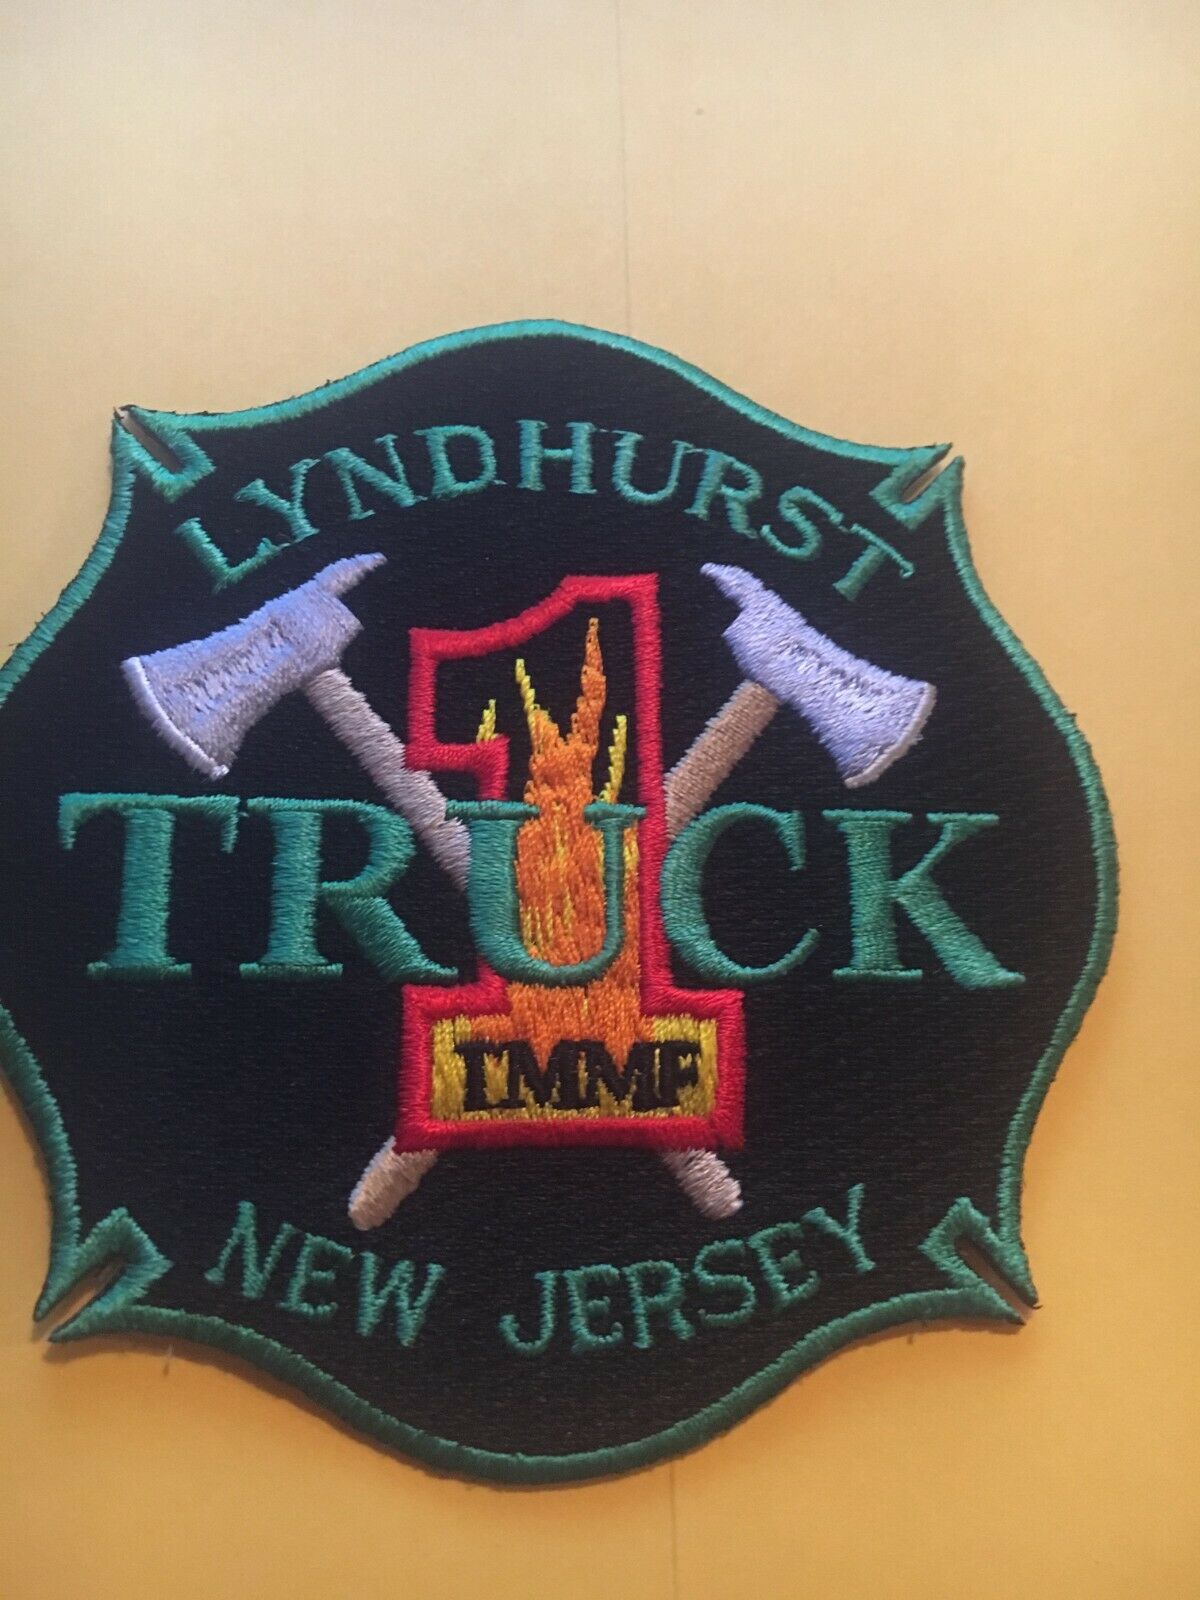 Truck 1 Lyndhurst New Jersey Fire Patch